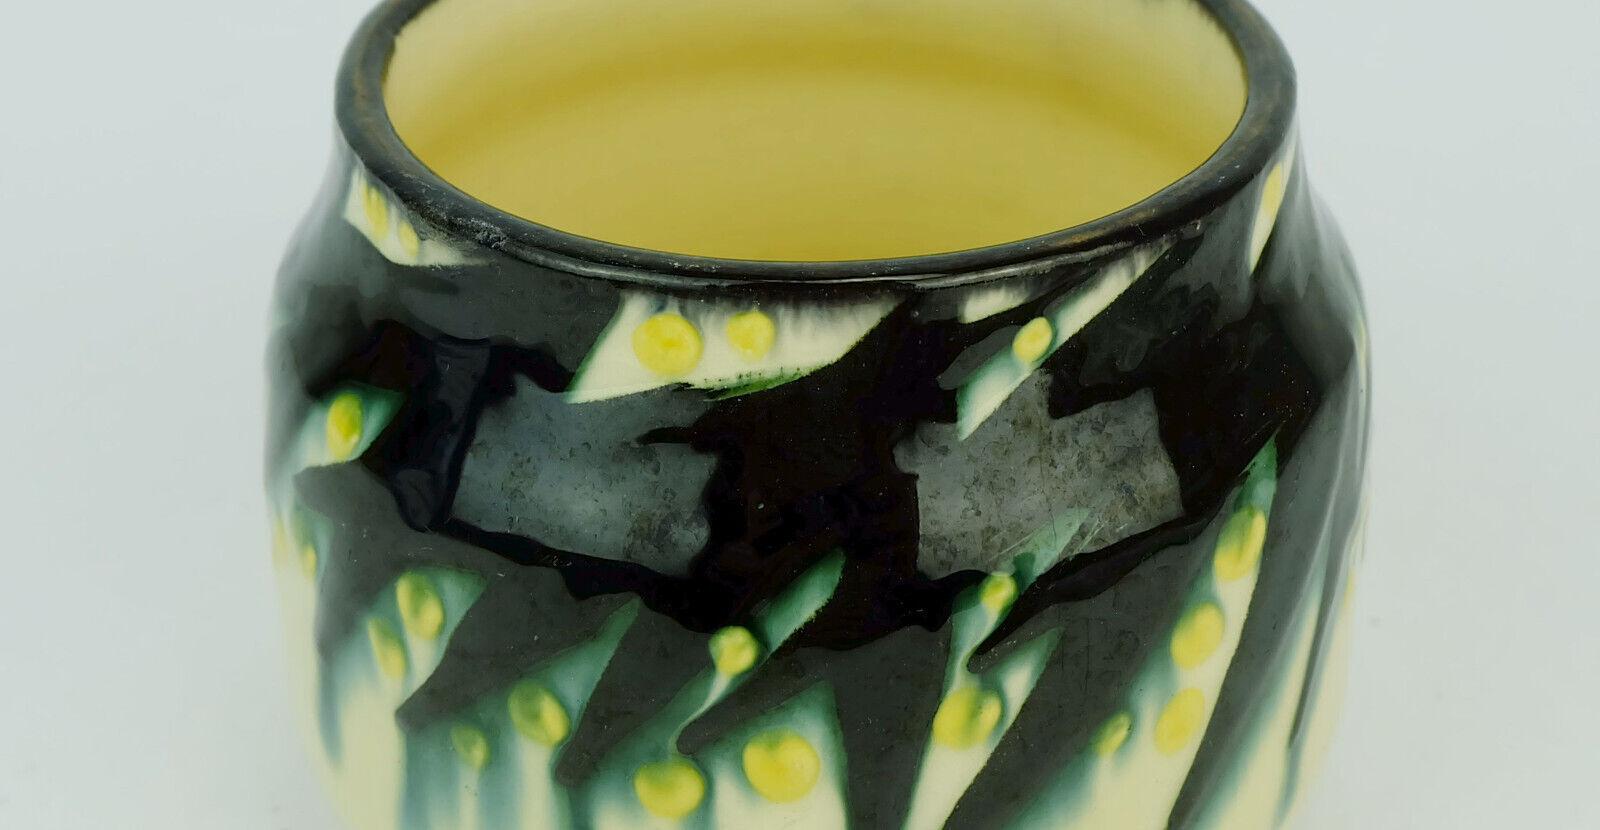 Kleines Gefäß (Vase oder Pflanzgefäß), hergestellt von den Tonwerken Kandern, Entwurf Max Laeuger um 1900 bis 1910. Markiert nach unten.

Abmessungen in cm:
Höhe 9,7 cm, Durchmesser 11,5 cm.

Abmessungen in Zoll: 
Höhe 3,81